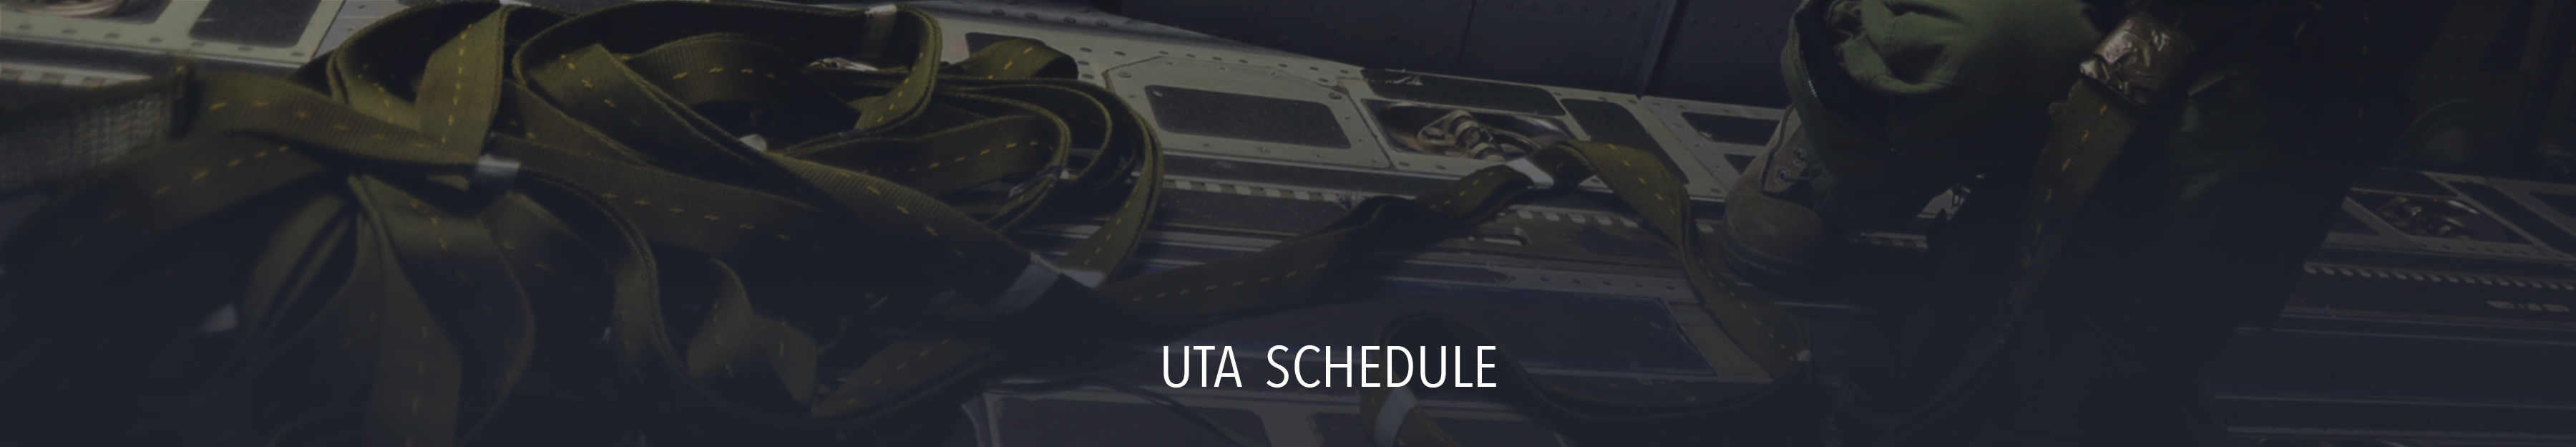 UTA Schedule header